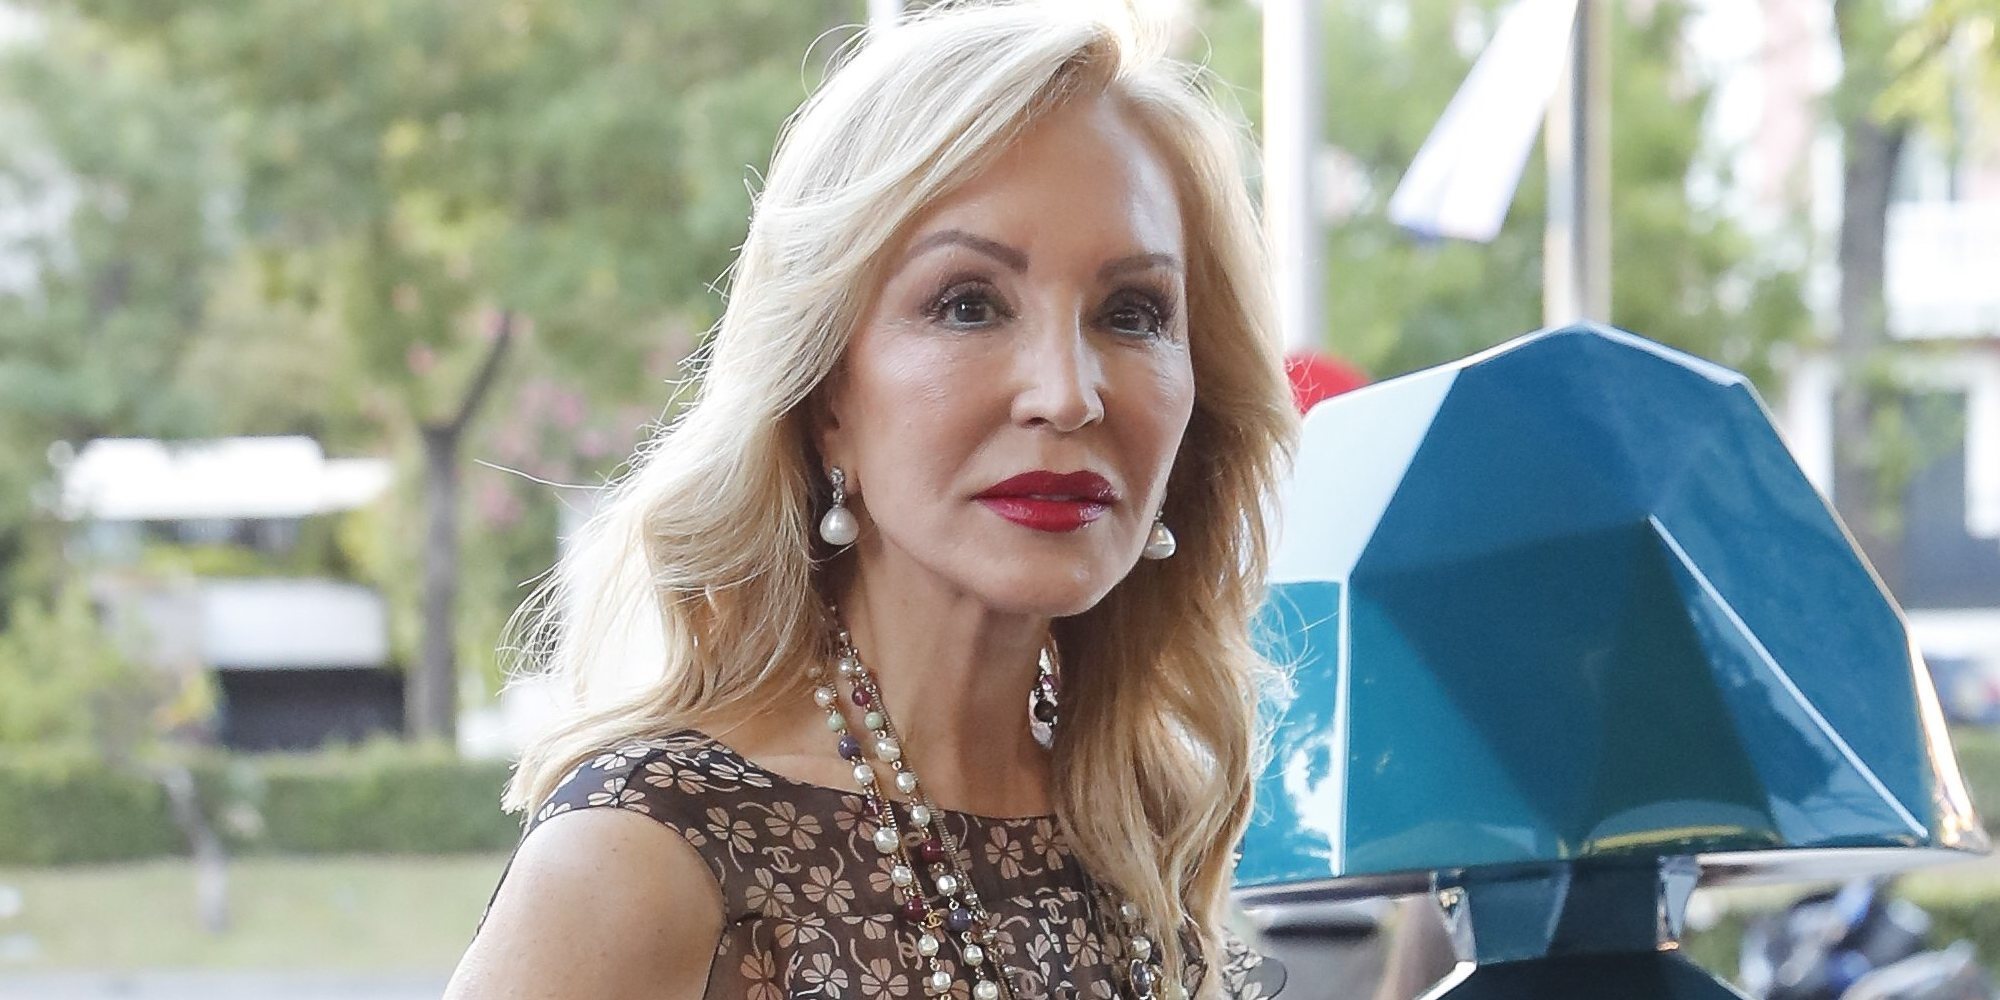 Carmen Lomana se pronuncia tras recibir los insultos de Miriam Saavedra: "Le he dado cariño"